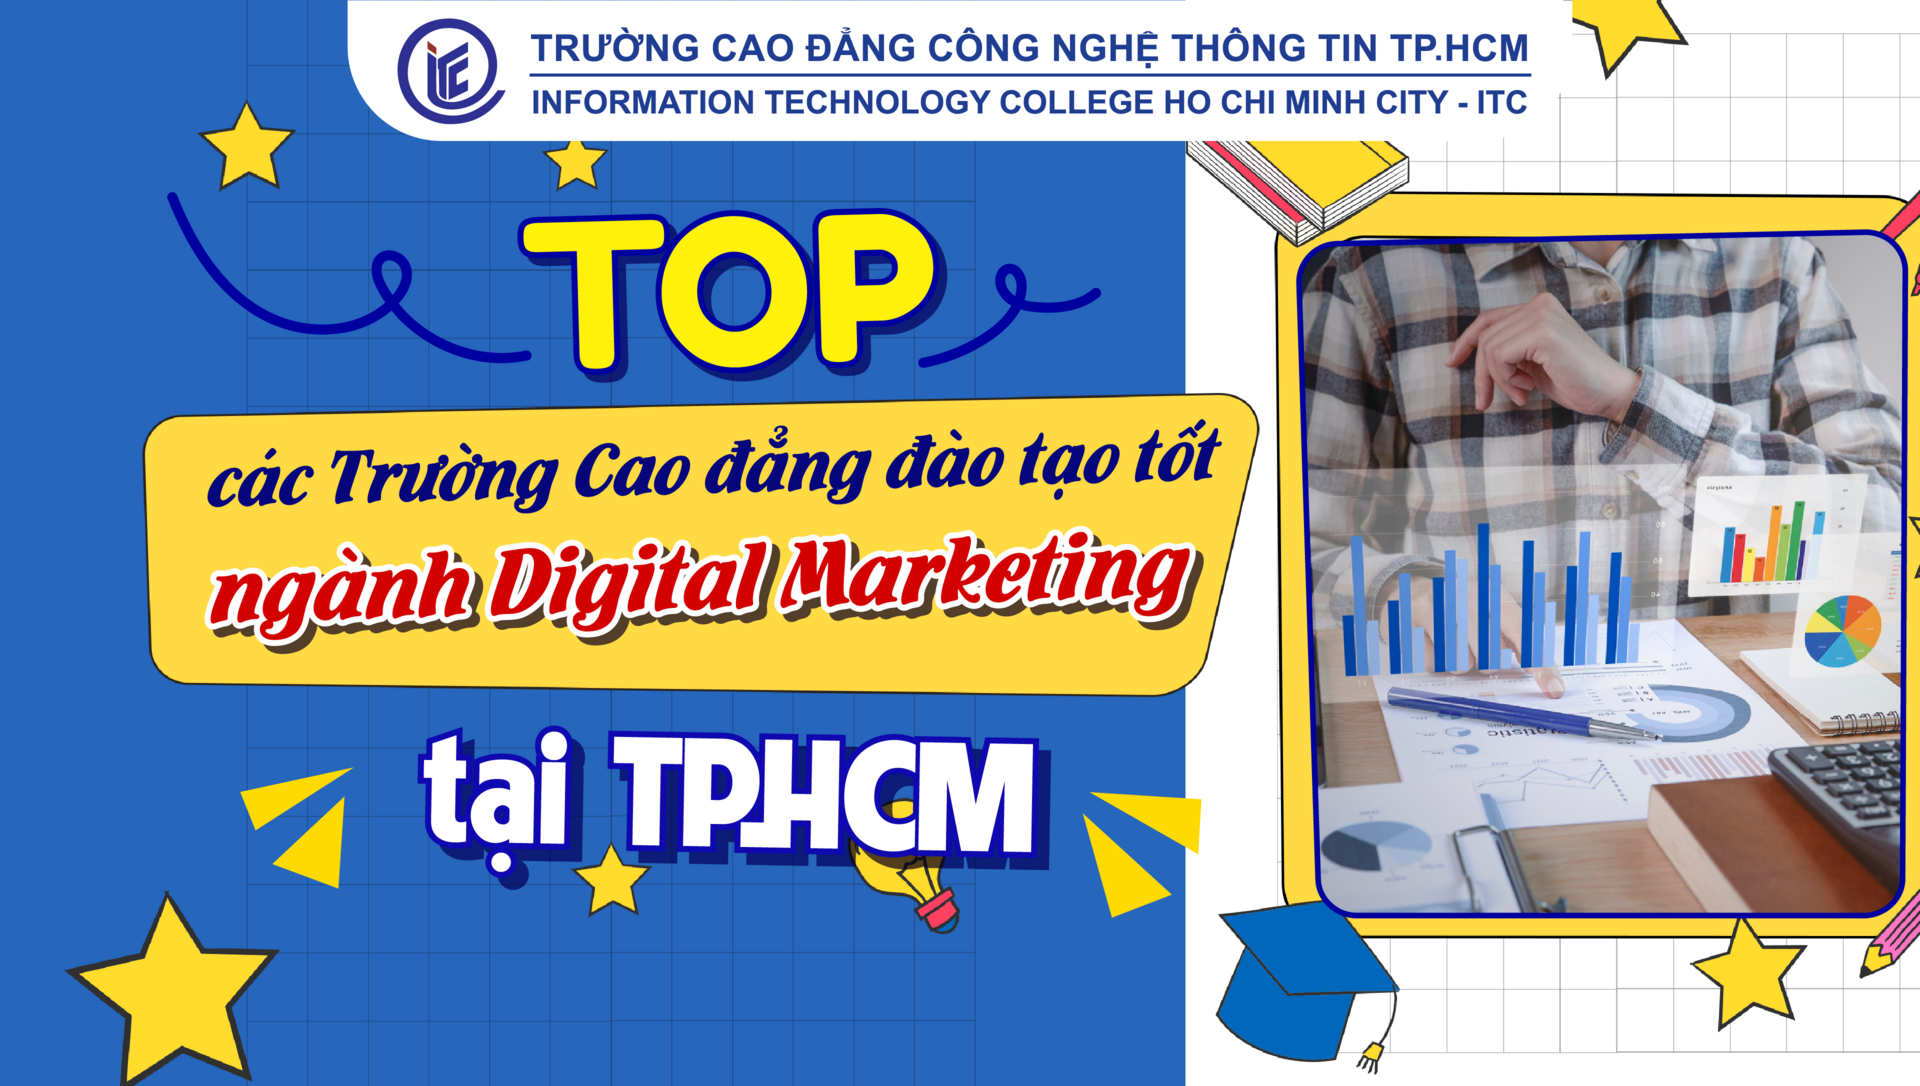 Top các Trường Cao đẳng đào tạo tốt ngành Digital Marketing tại TP.HCM